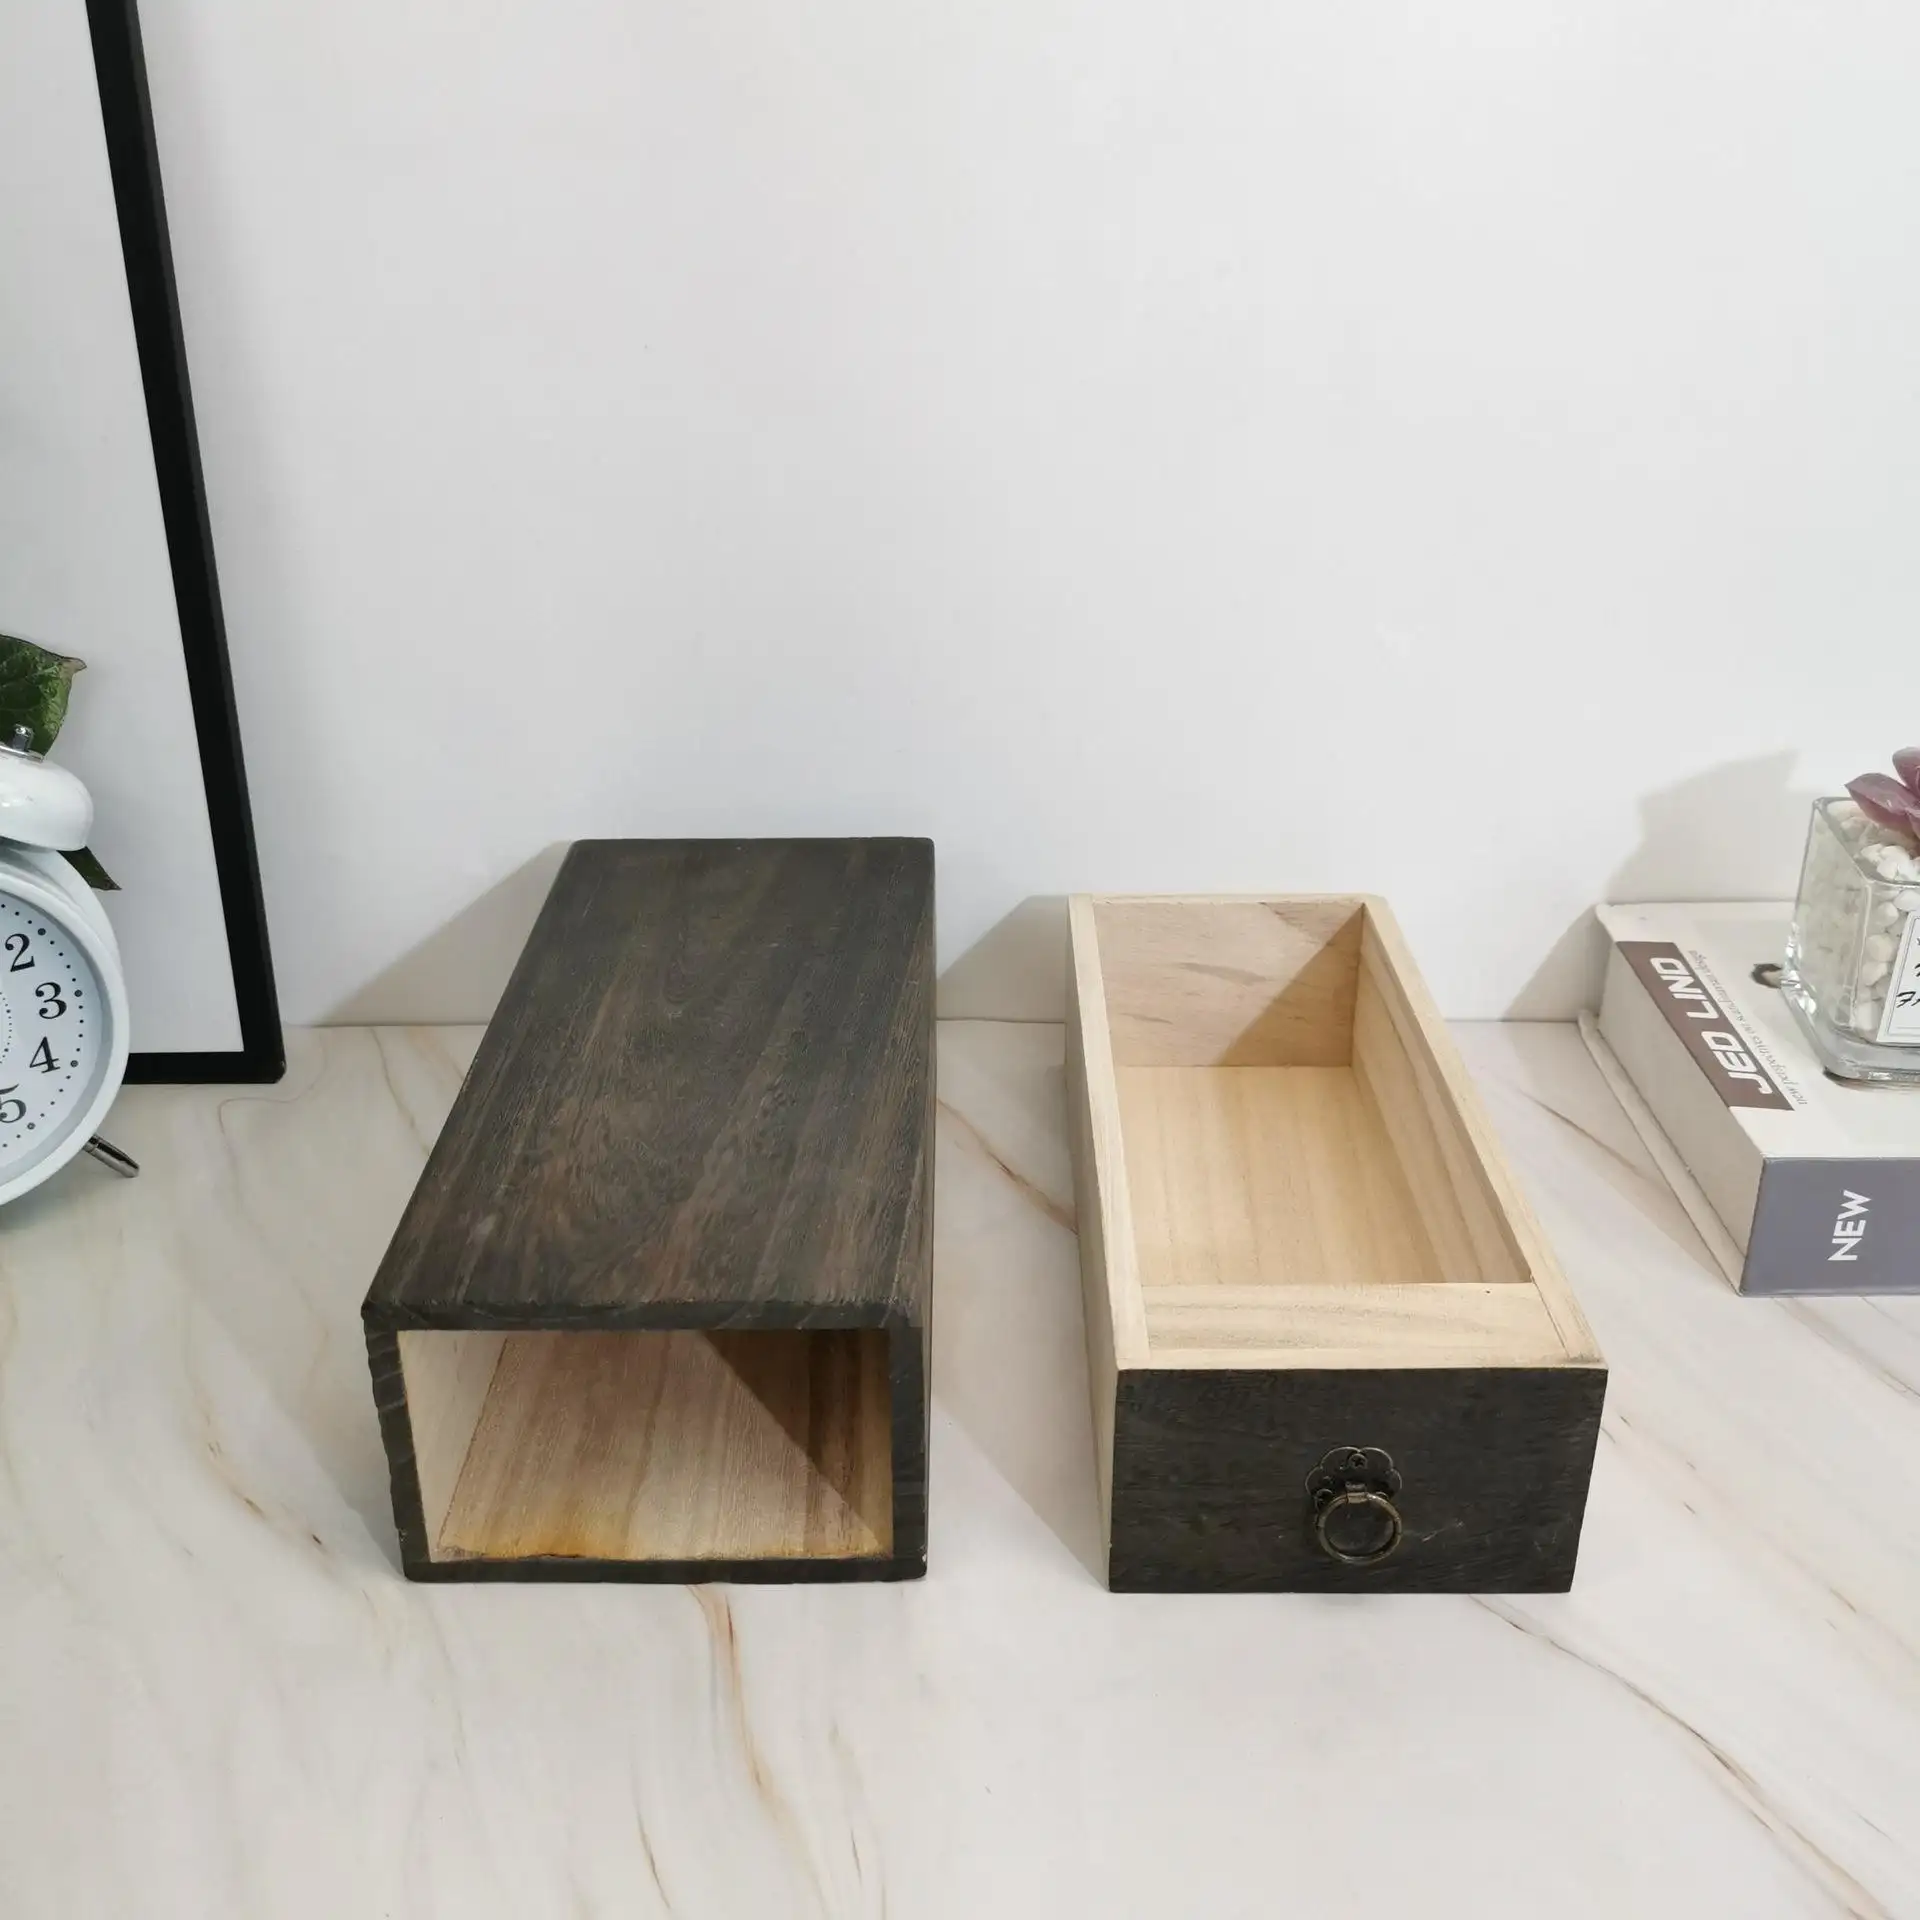 Gỗ ngăn kéo trường hợp hình chữ nhật hình hộp trà bằng gỗ với nắp cổ cho hàng thủ công mỹ nghệ trang sức tổ chức